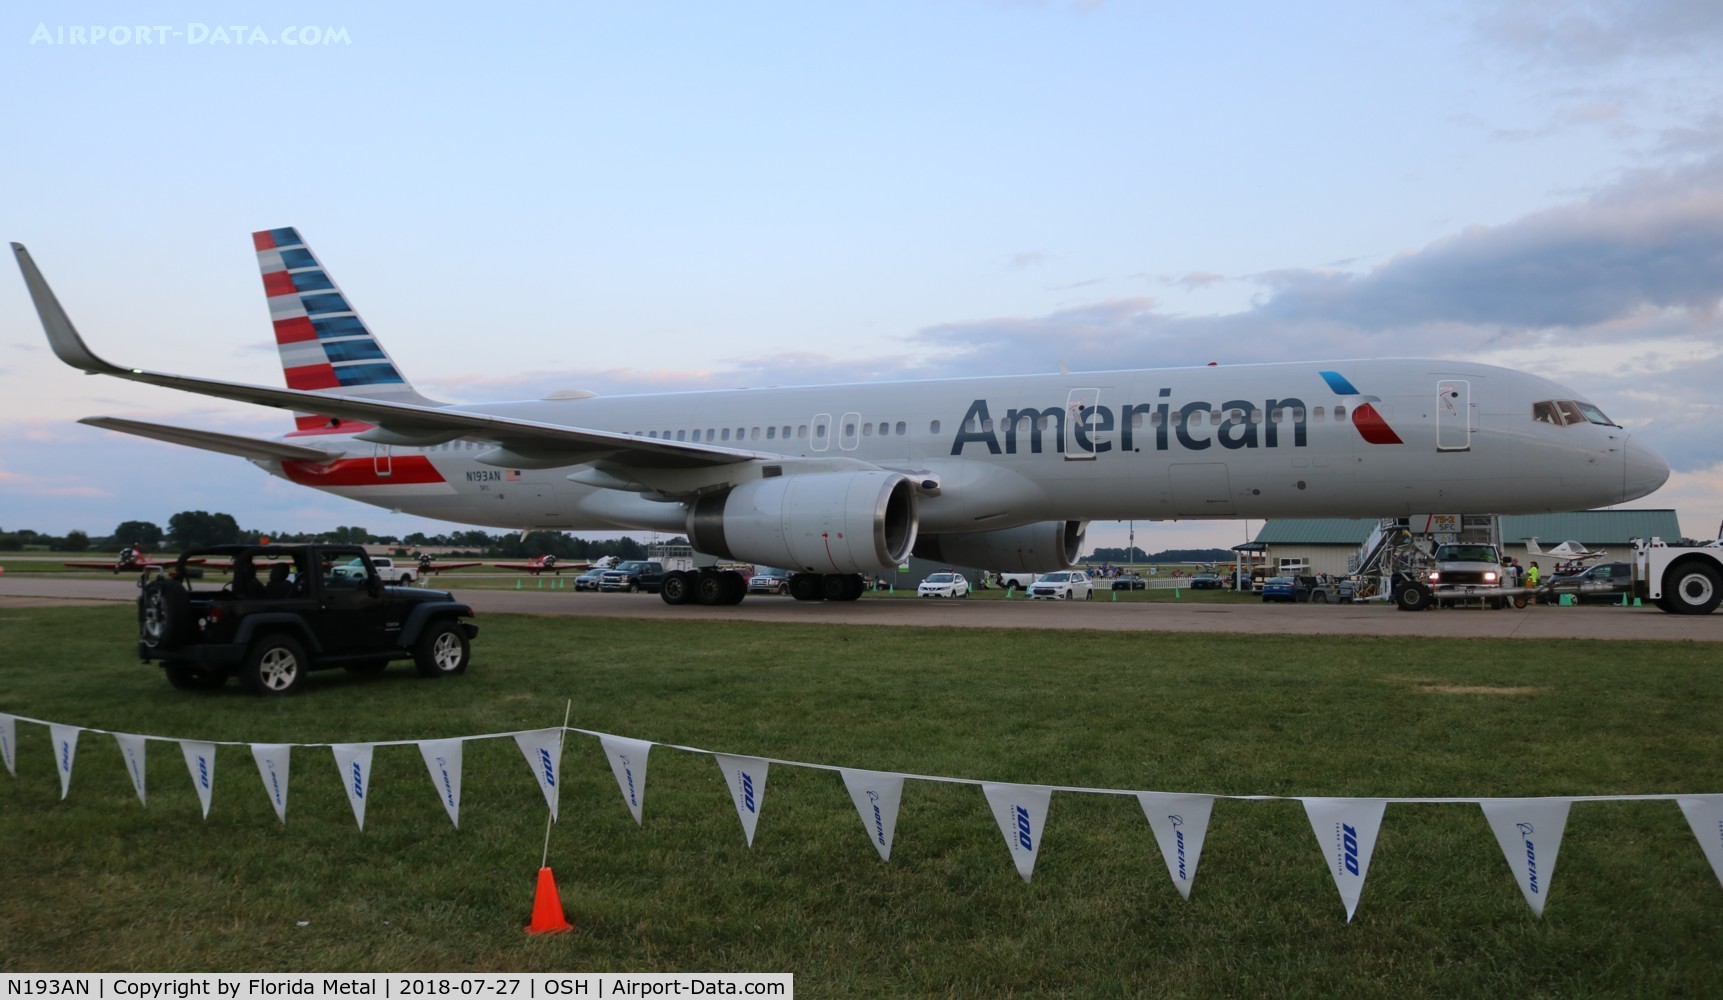 N193AN, 2001 Boeing 757-223 C/N 32387, American